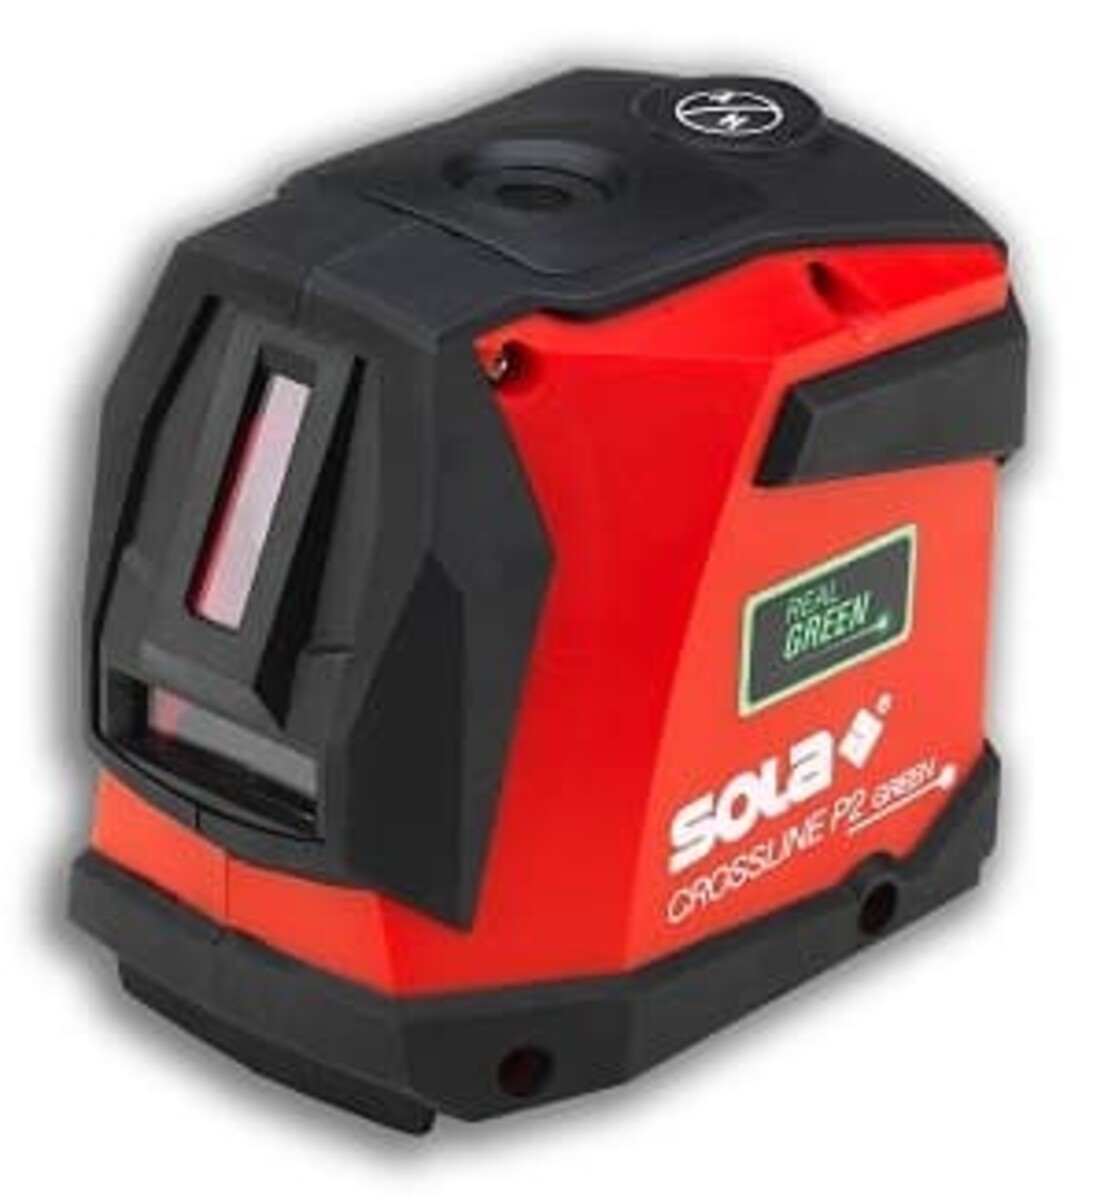 Liniový laser Sola 71013901 NO BRAND